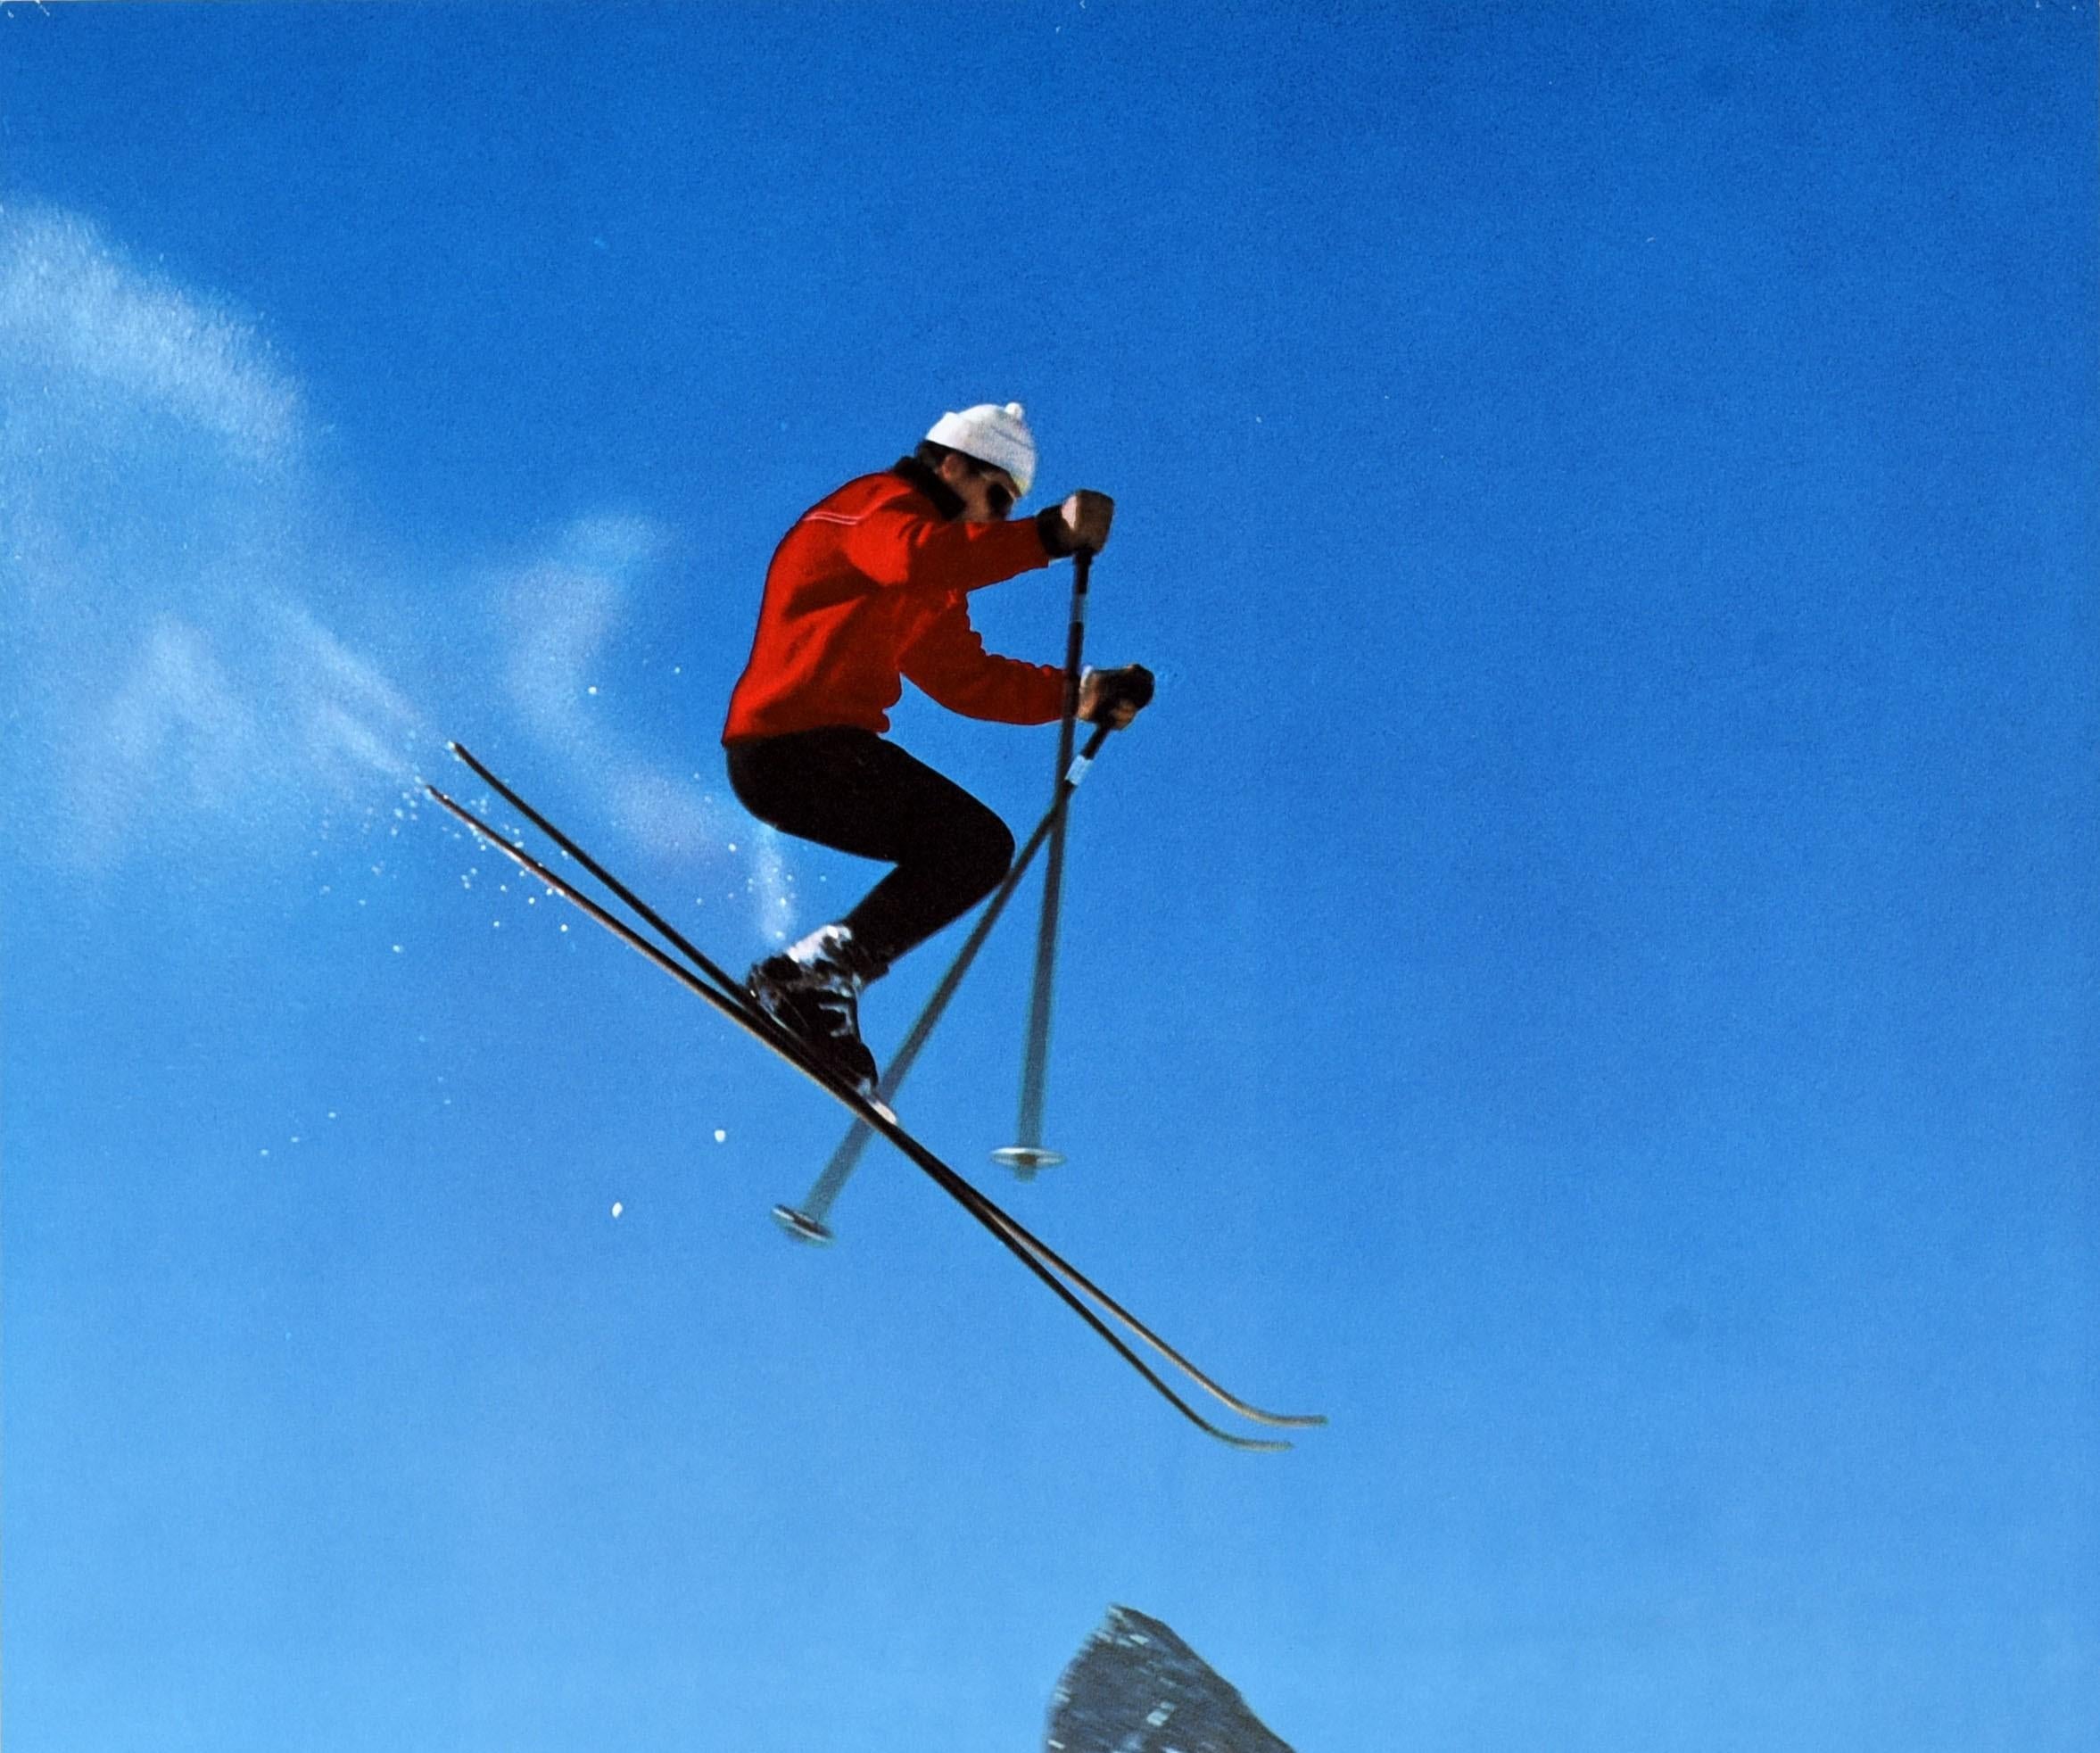 Original Vintage Poster Zermatt Switzerland Matterhorn Skiing Winter Sport Alps - Print by Alfred Perren-Barberini